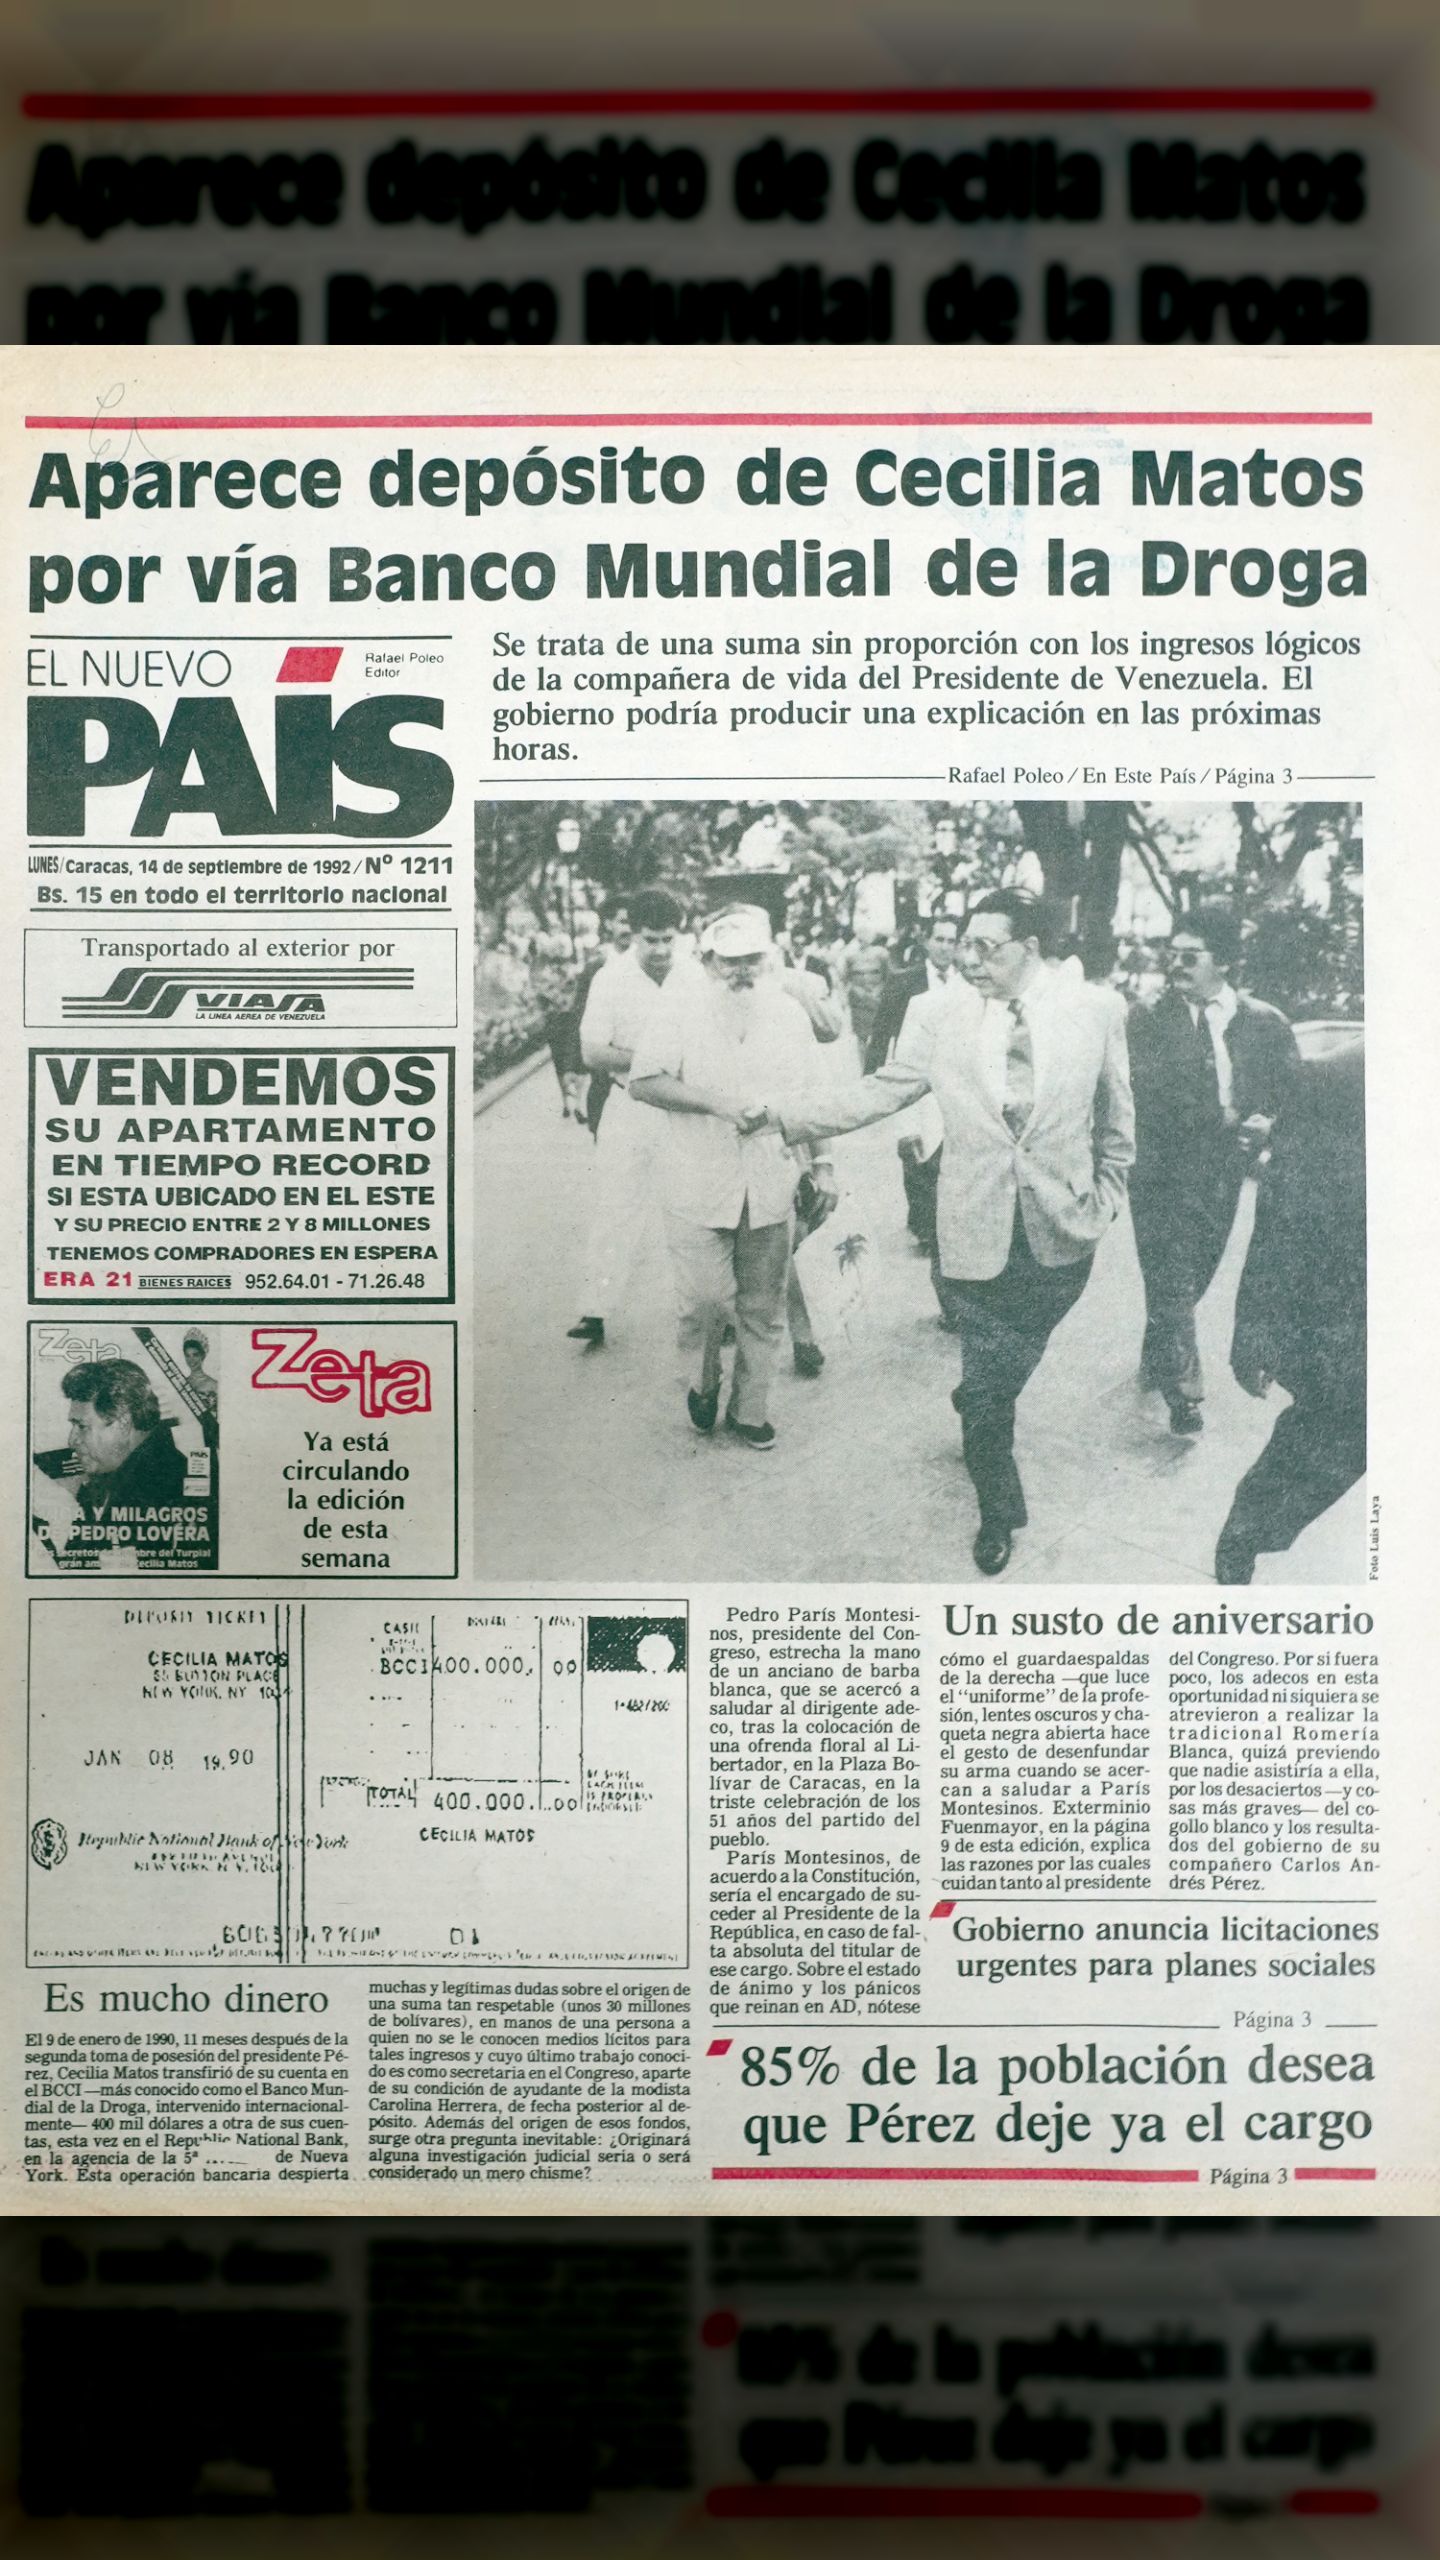 Aparece depósito de Cecilia Matos por vía Banco Mundial de la Droga (El Nuevo País, 14 de septiembre 1992)